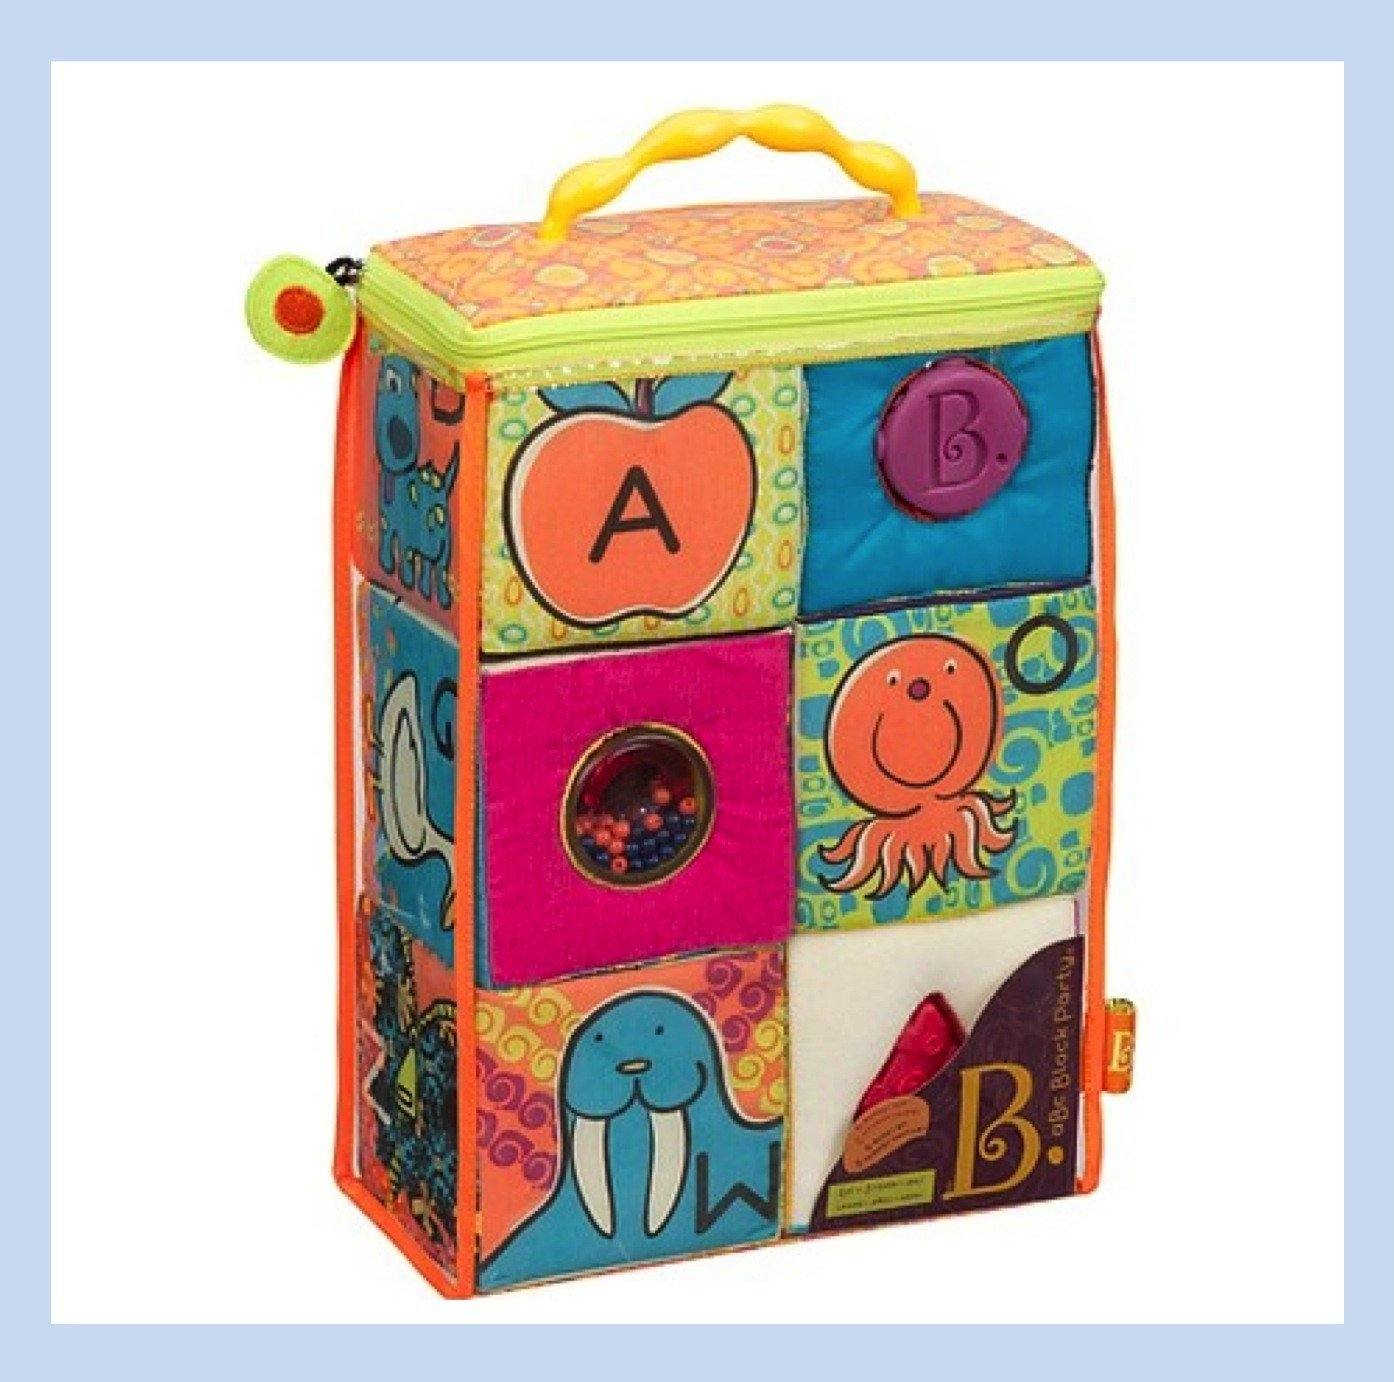 b toys alphabet blocks